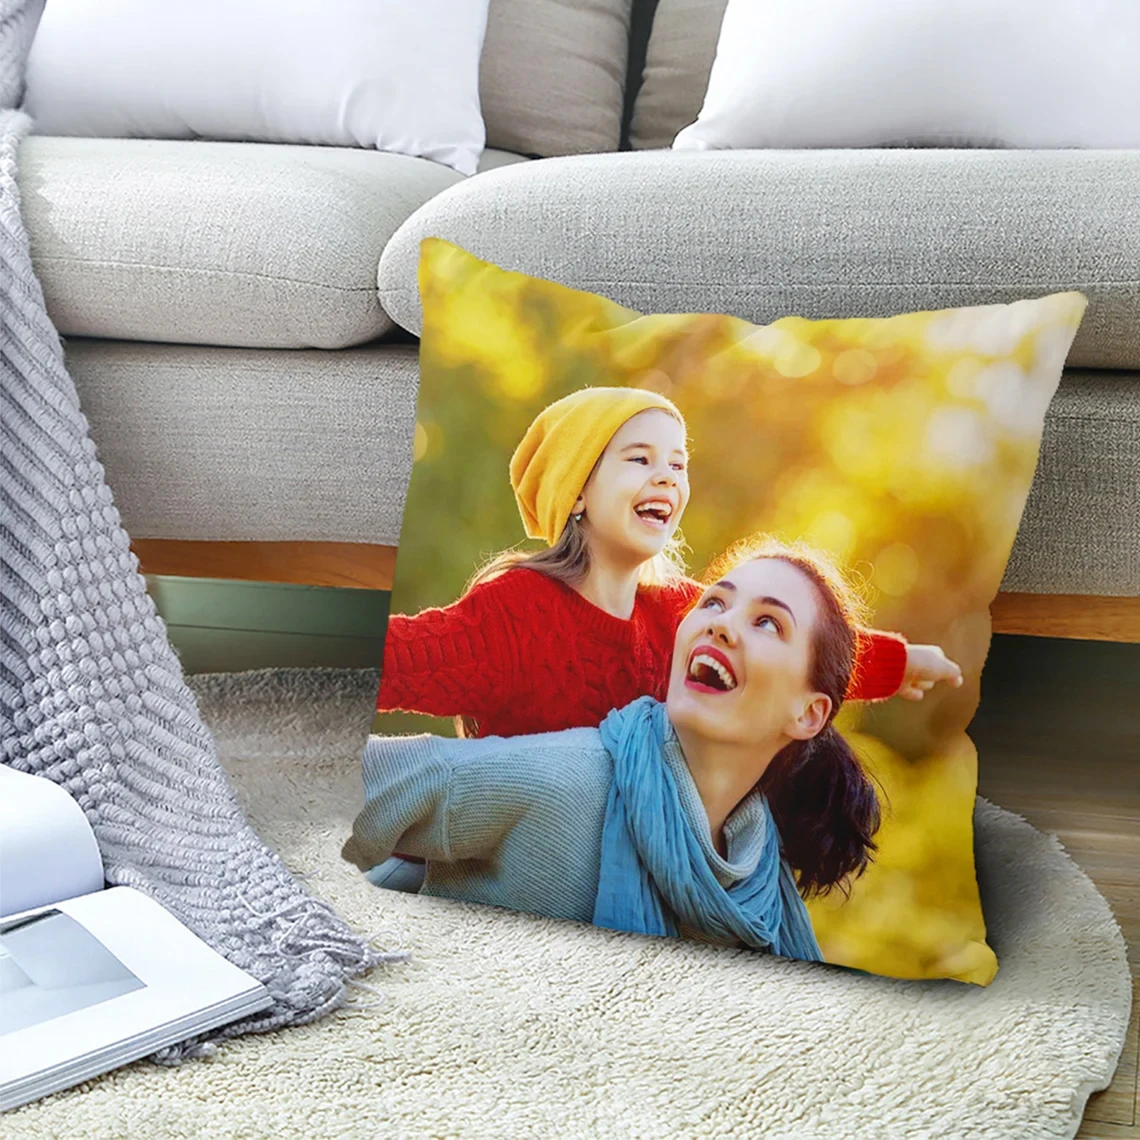 

Чехол для подушки на заказ, ваши изображения печатаются, выберите свой логотип текста или картинку 18 дюймов подушка на заказ для дивана, кровати, кресла